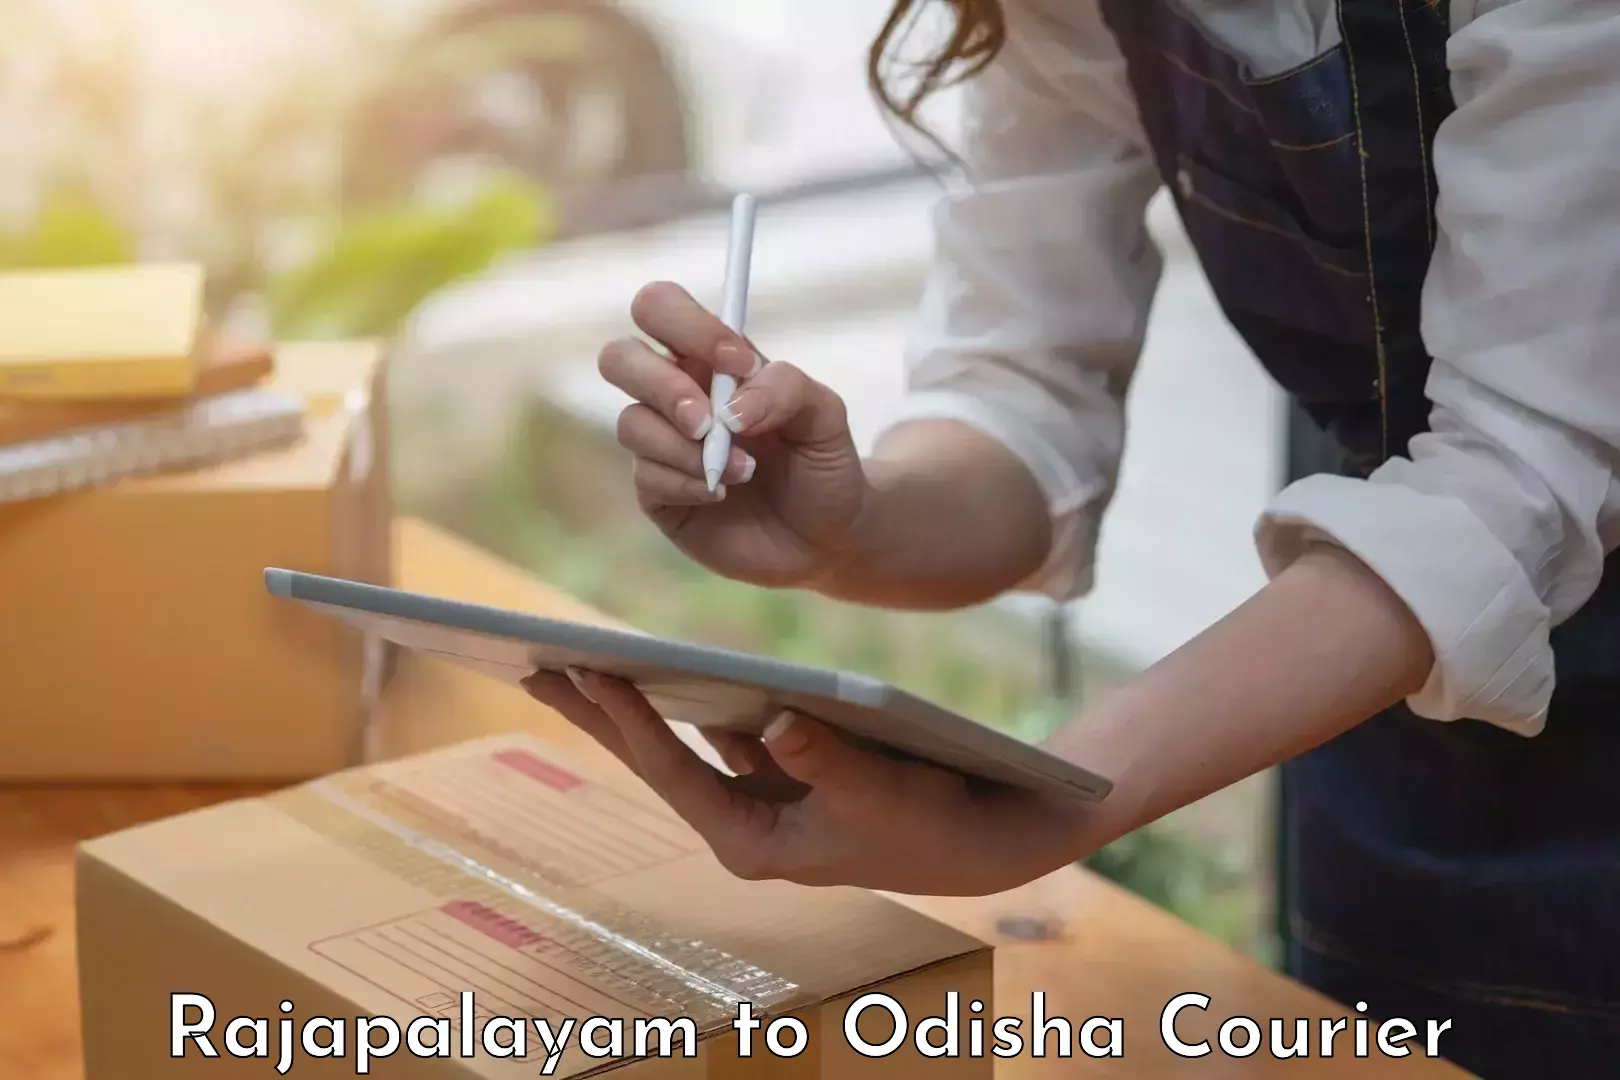 Furniture relocation experts Rajapalayam to Jaipatna